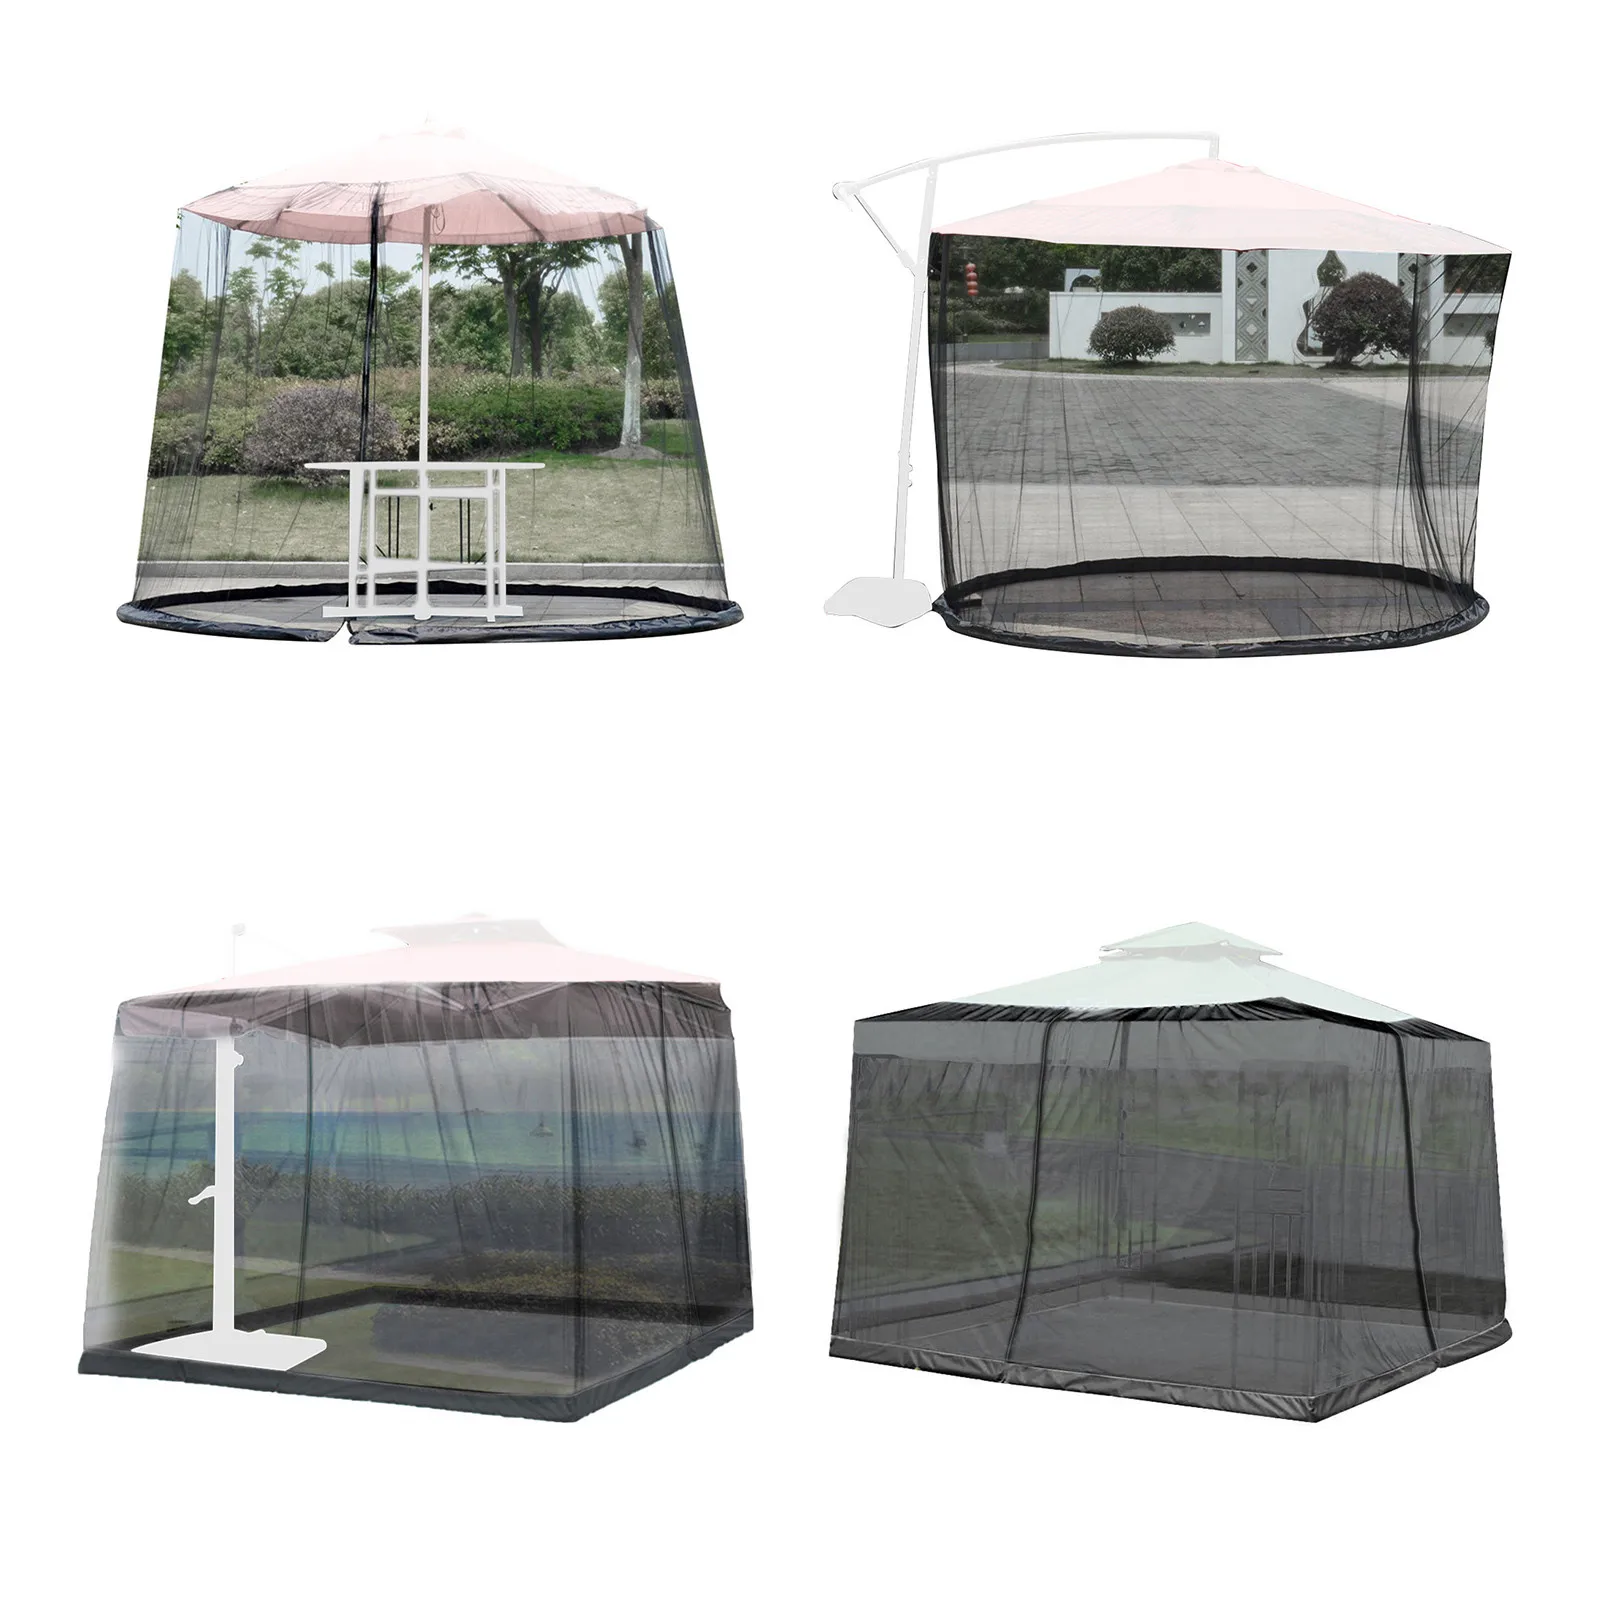 Sombrilla de Patio, red grande para acampar, mosquitera, pantalla de poliéster ajustable, cierre de malla con puerta con cremallera, ligera